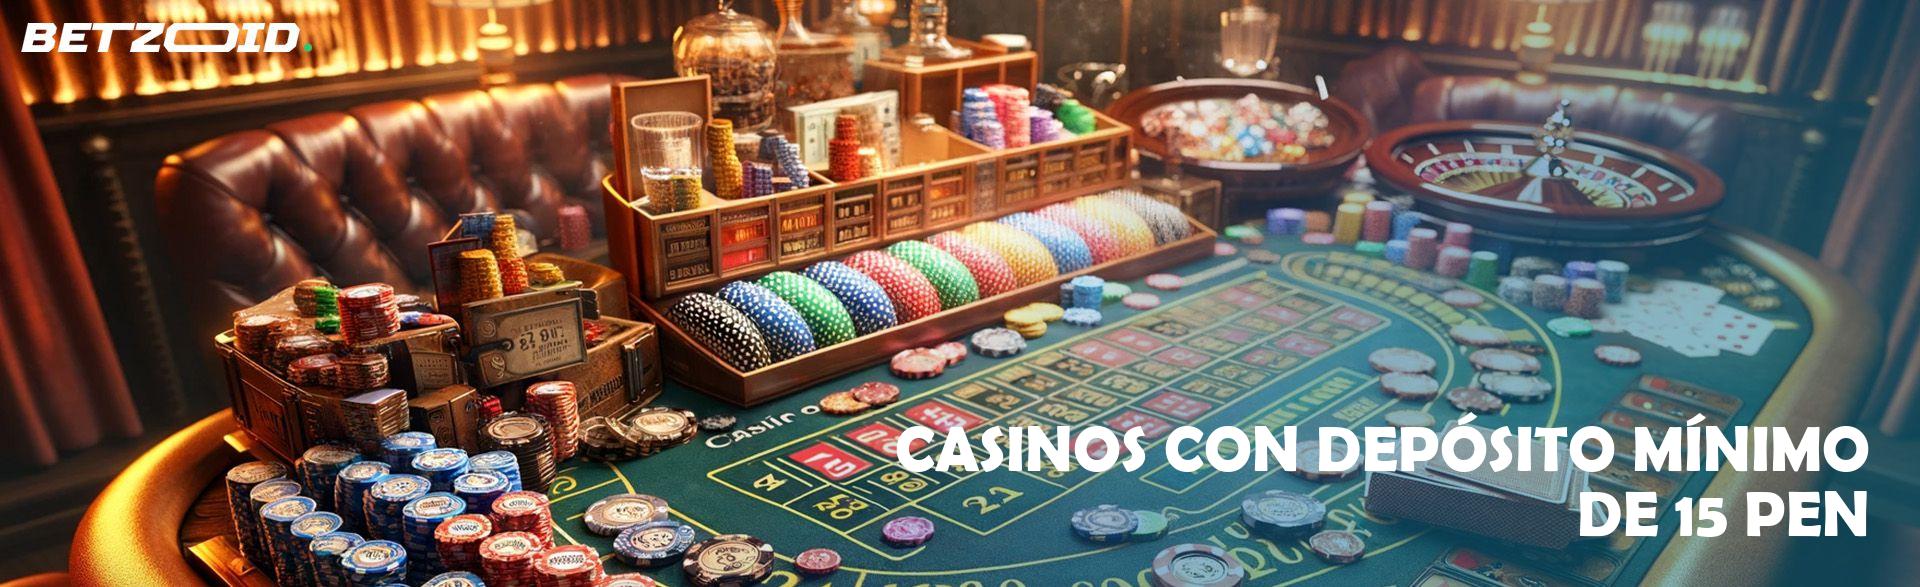 Casinos con Depósito Mínimo de 15 PEN.